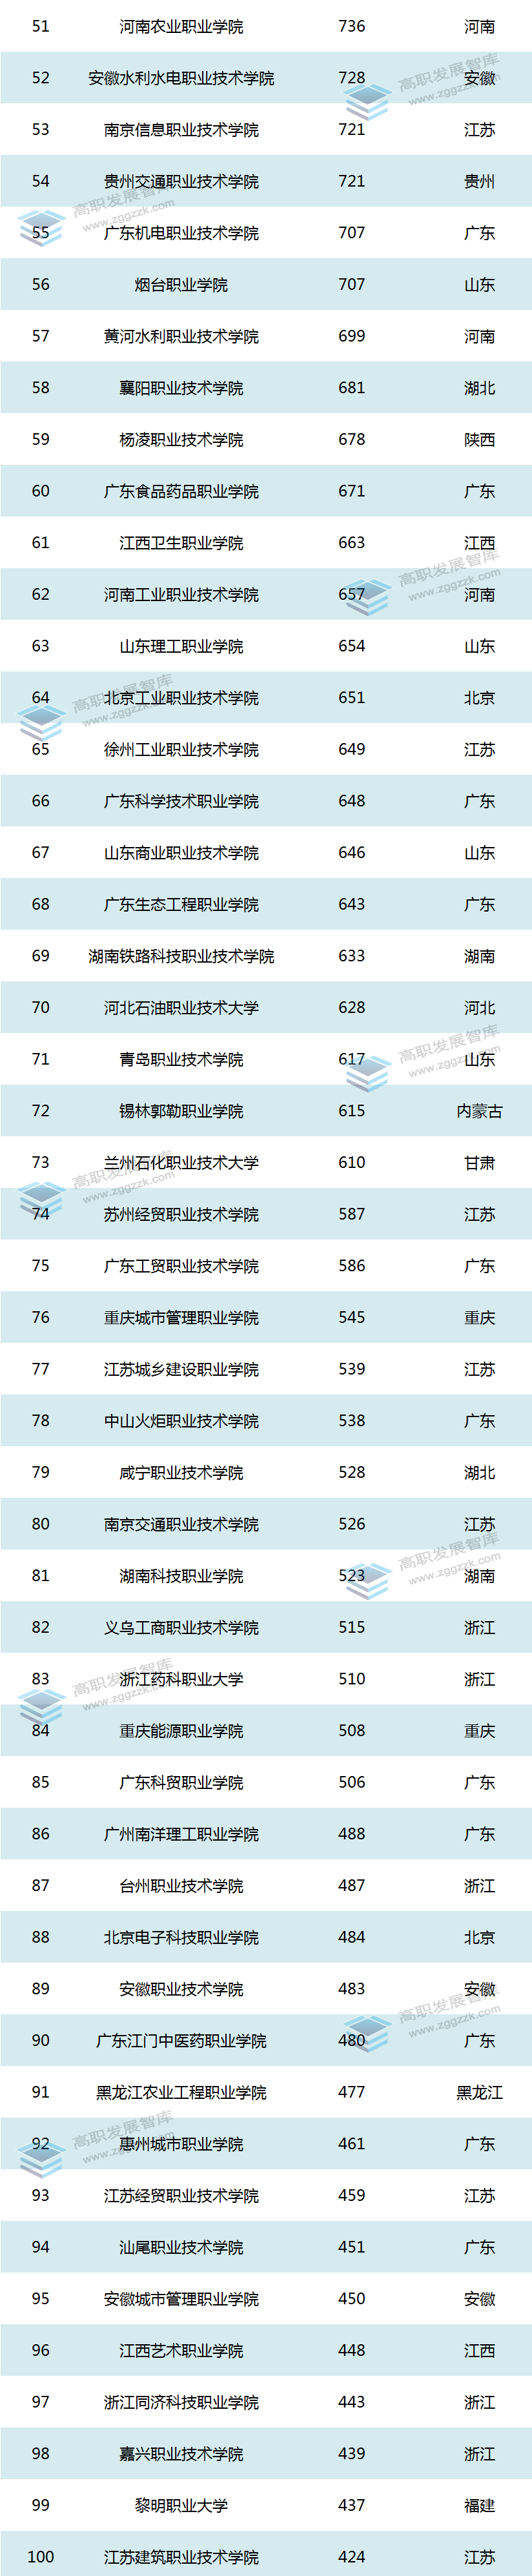 中国高职院校2021年度科研社会服务经费排行榜